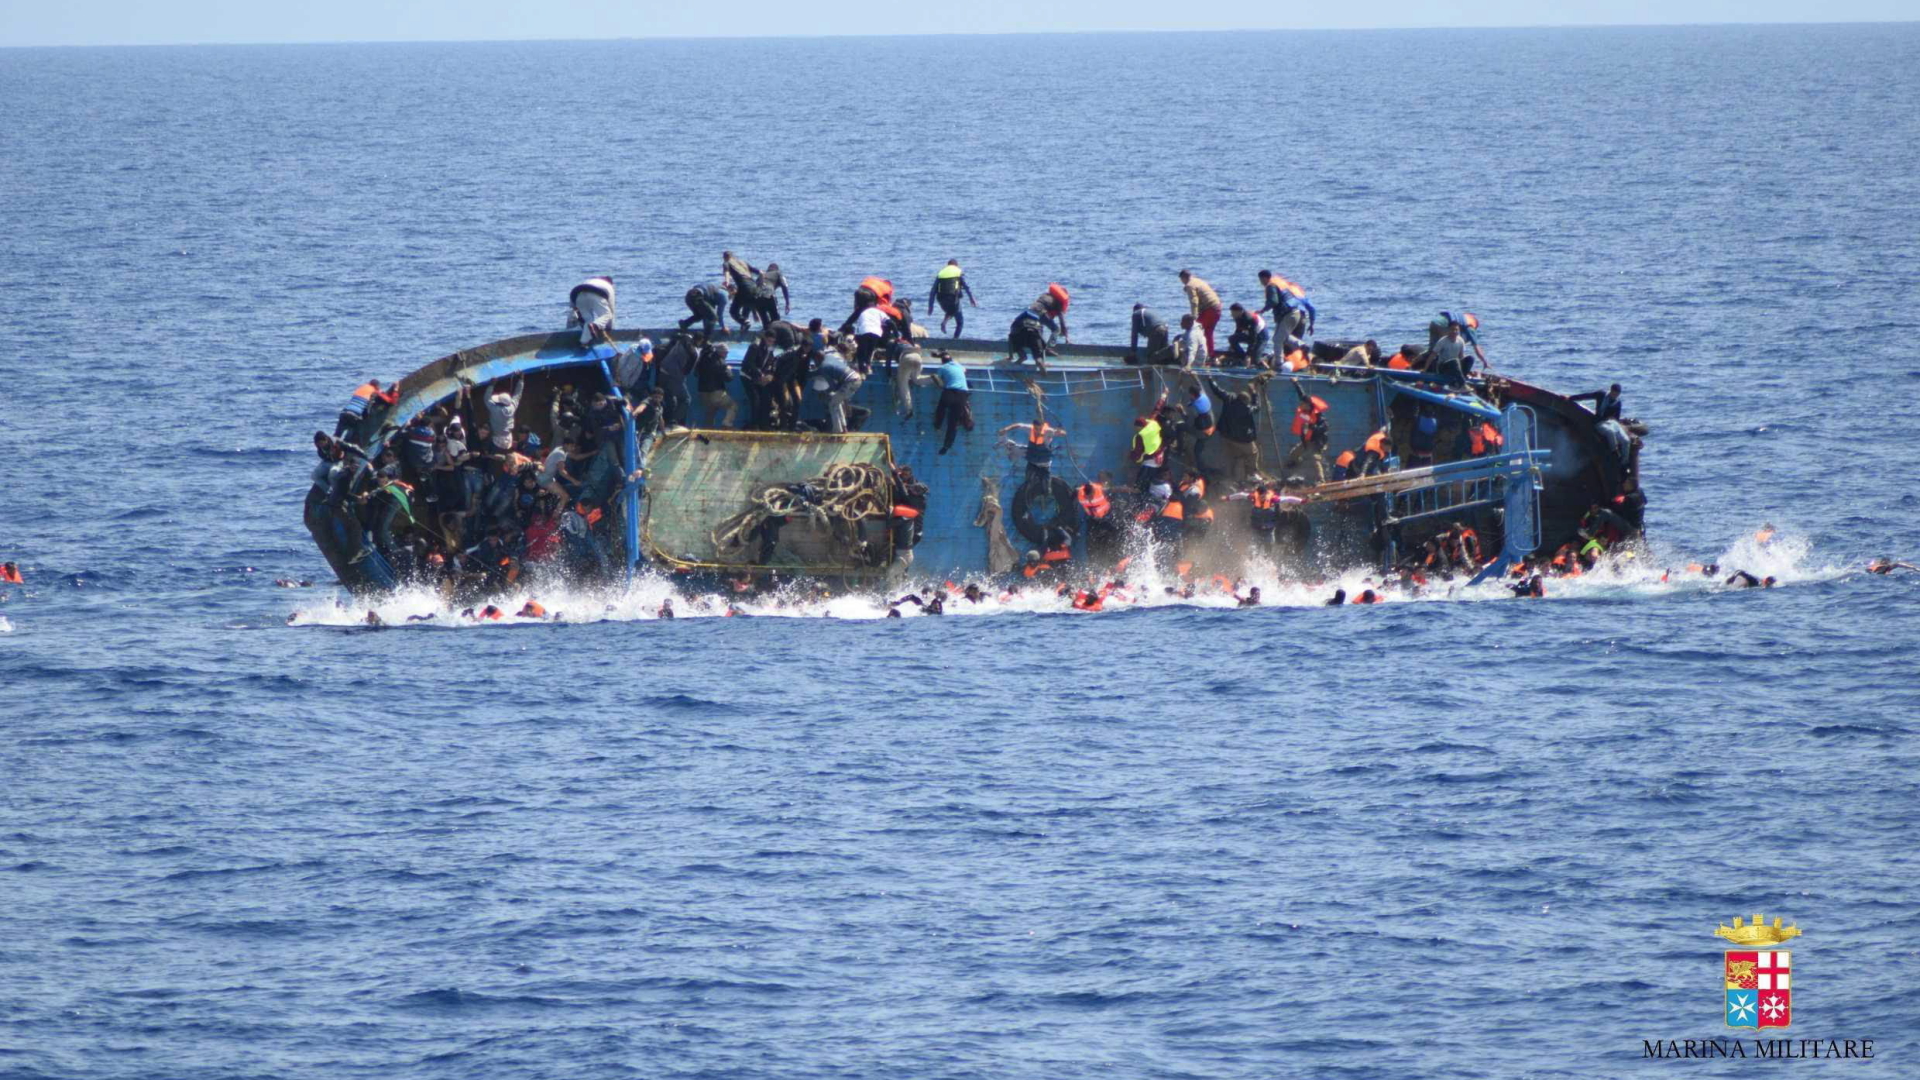 Flüchtlinge springen in der Nähe von Sizilien von einem kenternden Boot. Dieses Foto wurde im Mai von der italienischen Marine veröffentlicht. | dpa